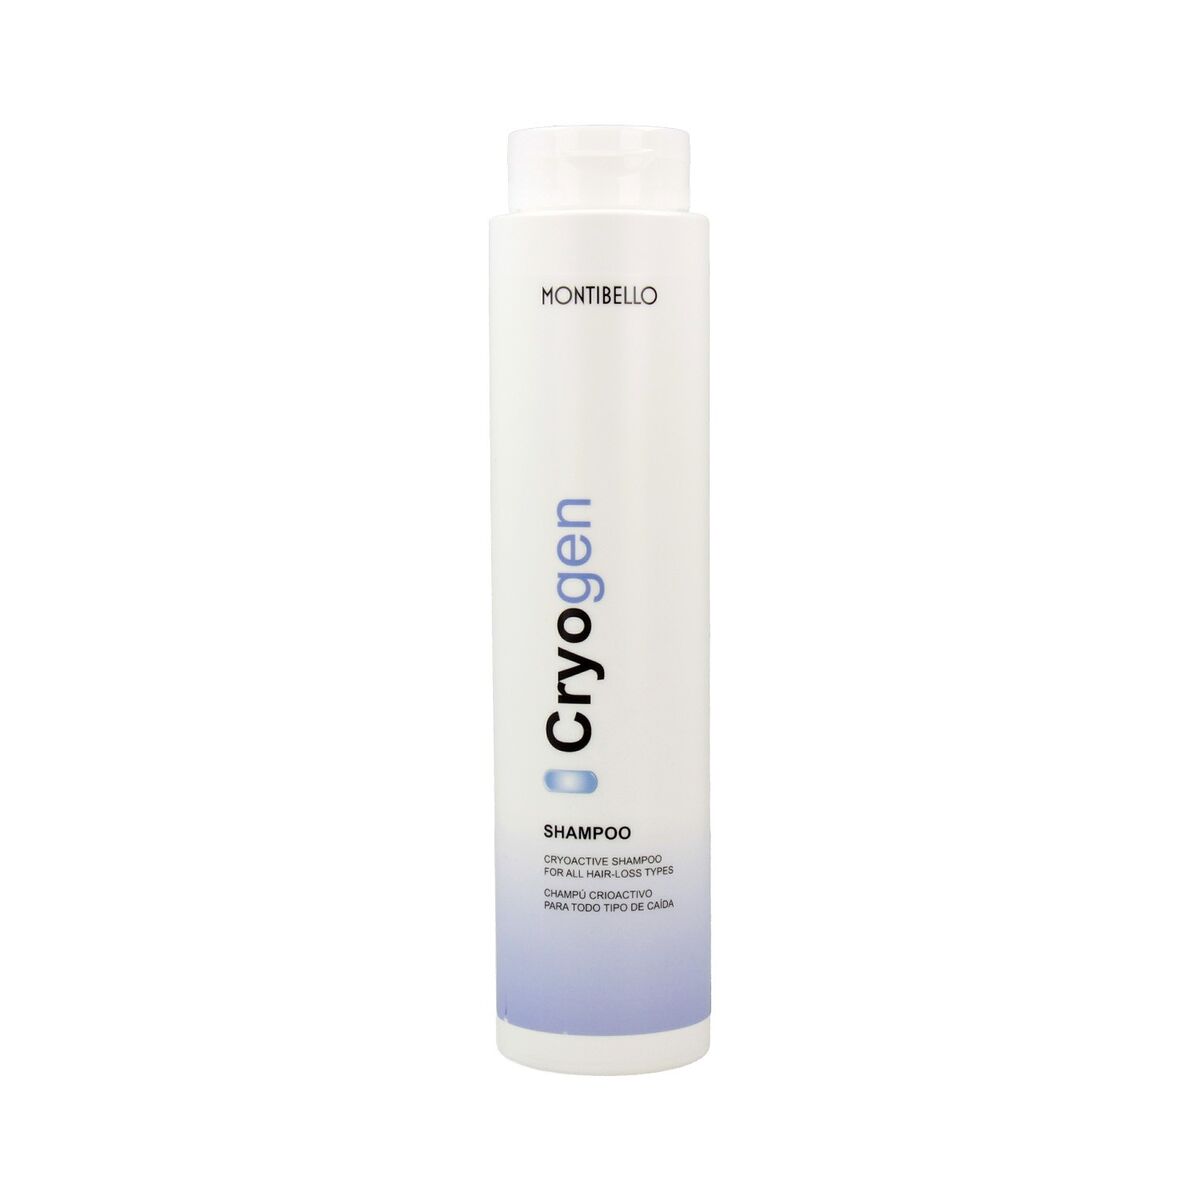 Osta tuote Shampoo Cryogen Montibello Cryogen 300 ml verkkokaupastamme Korhone: Terveys & Kauneus 20% alennuksella koodilla KORHONE